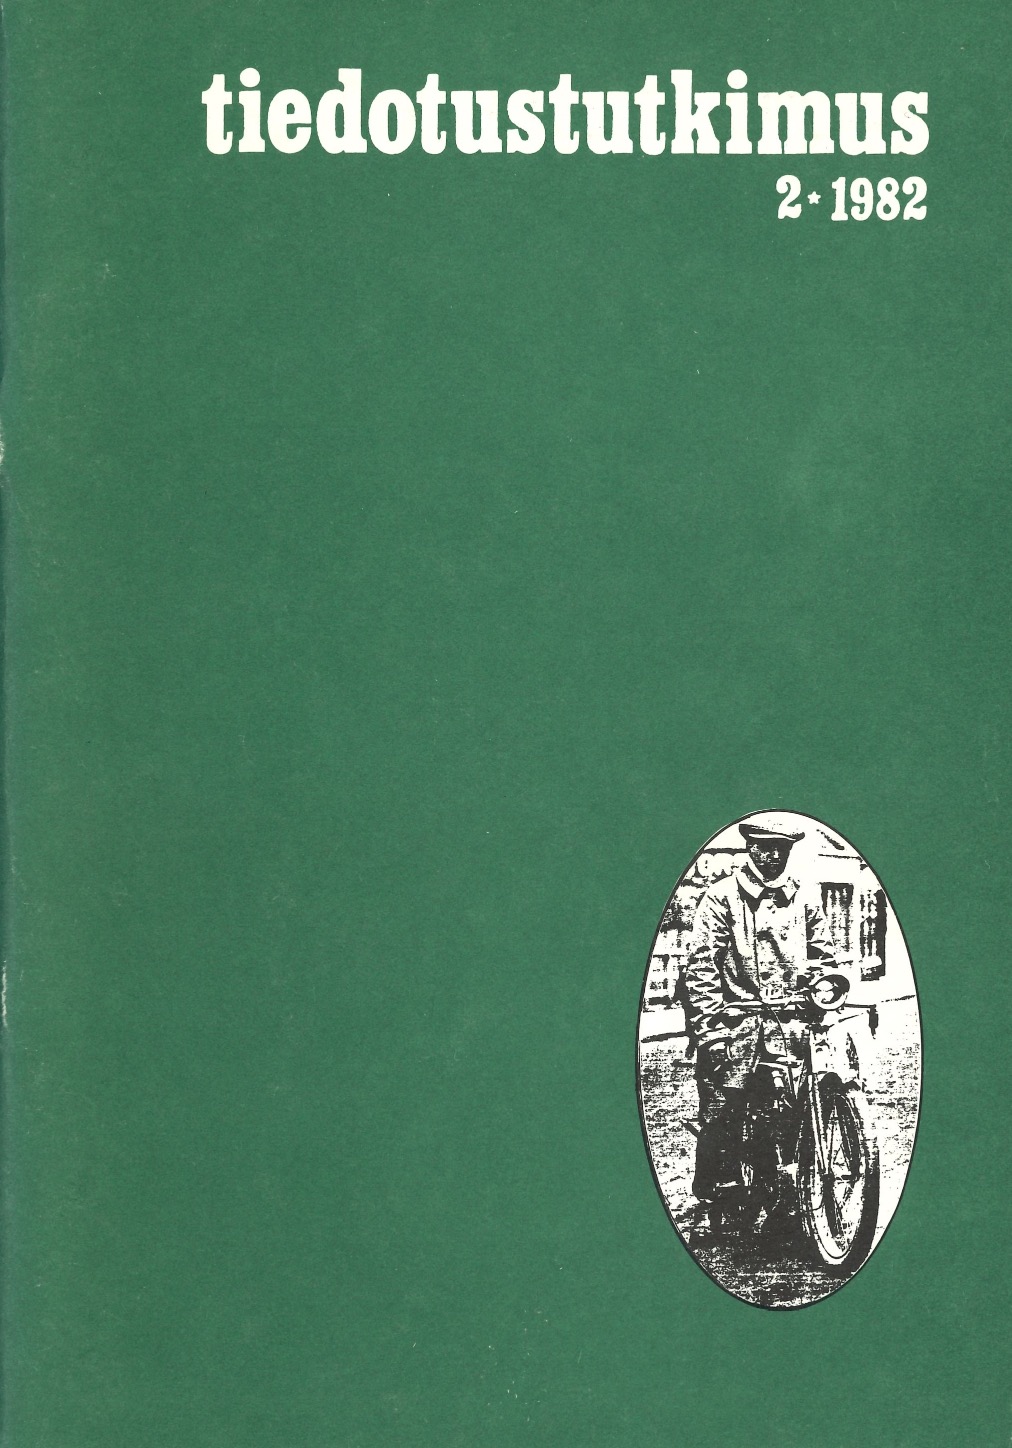 					Näytä Vol 5 Nro 2 (1982)
				